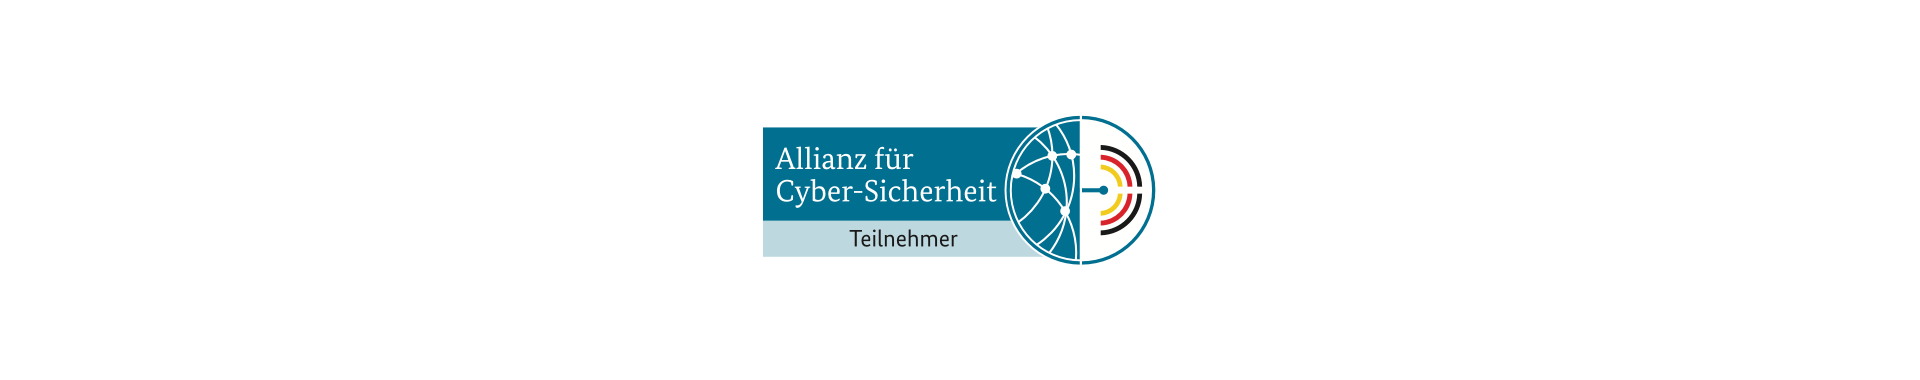 Tresorit tritt der Allianz für Cyber-Sicherheit bei